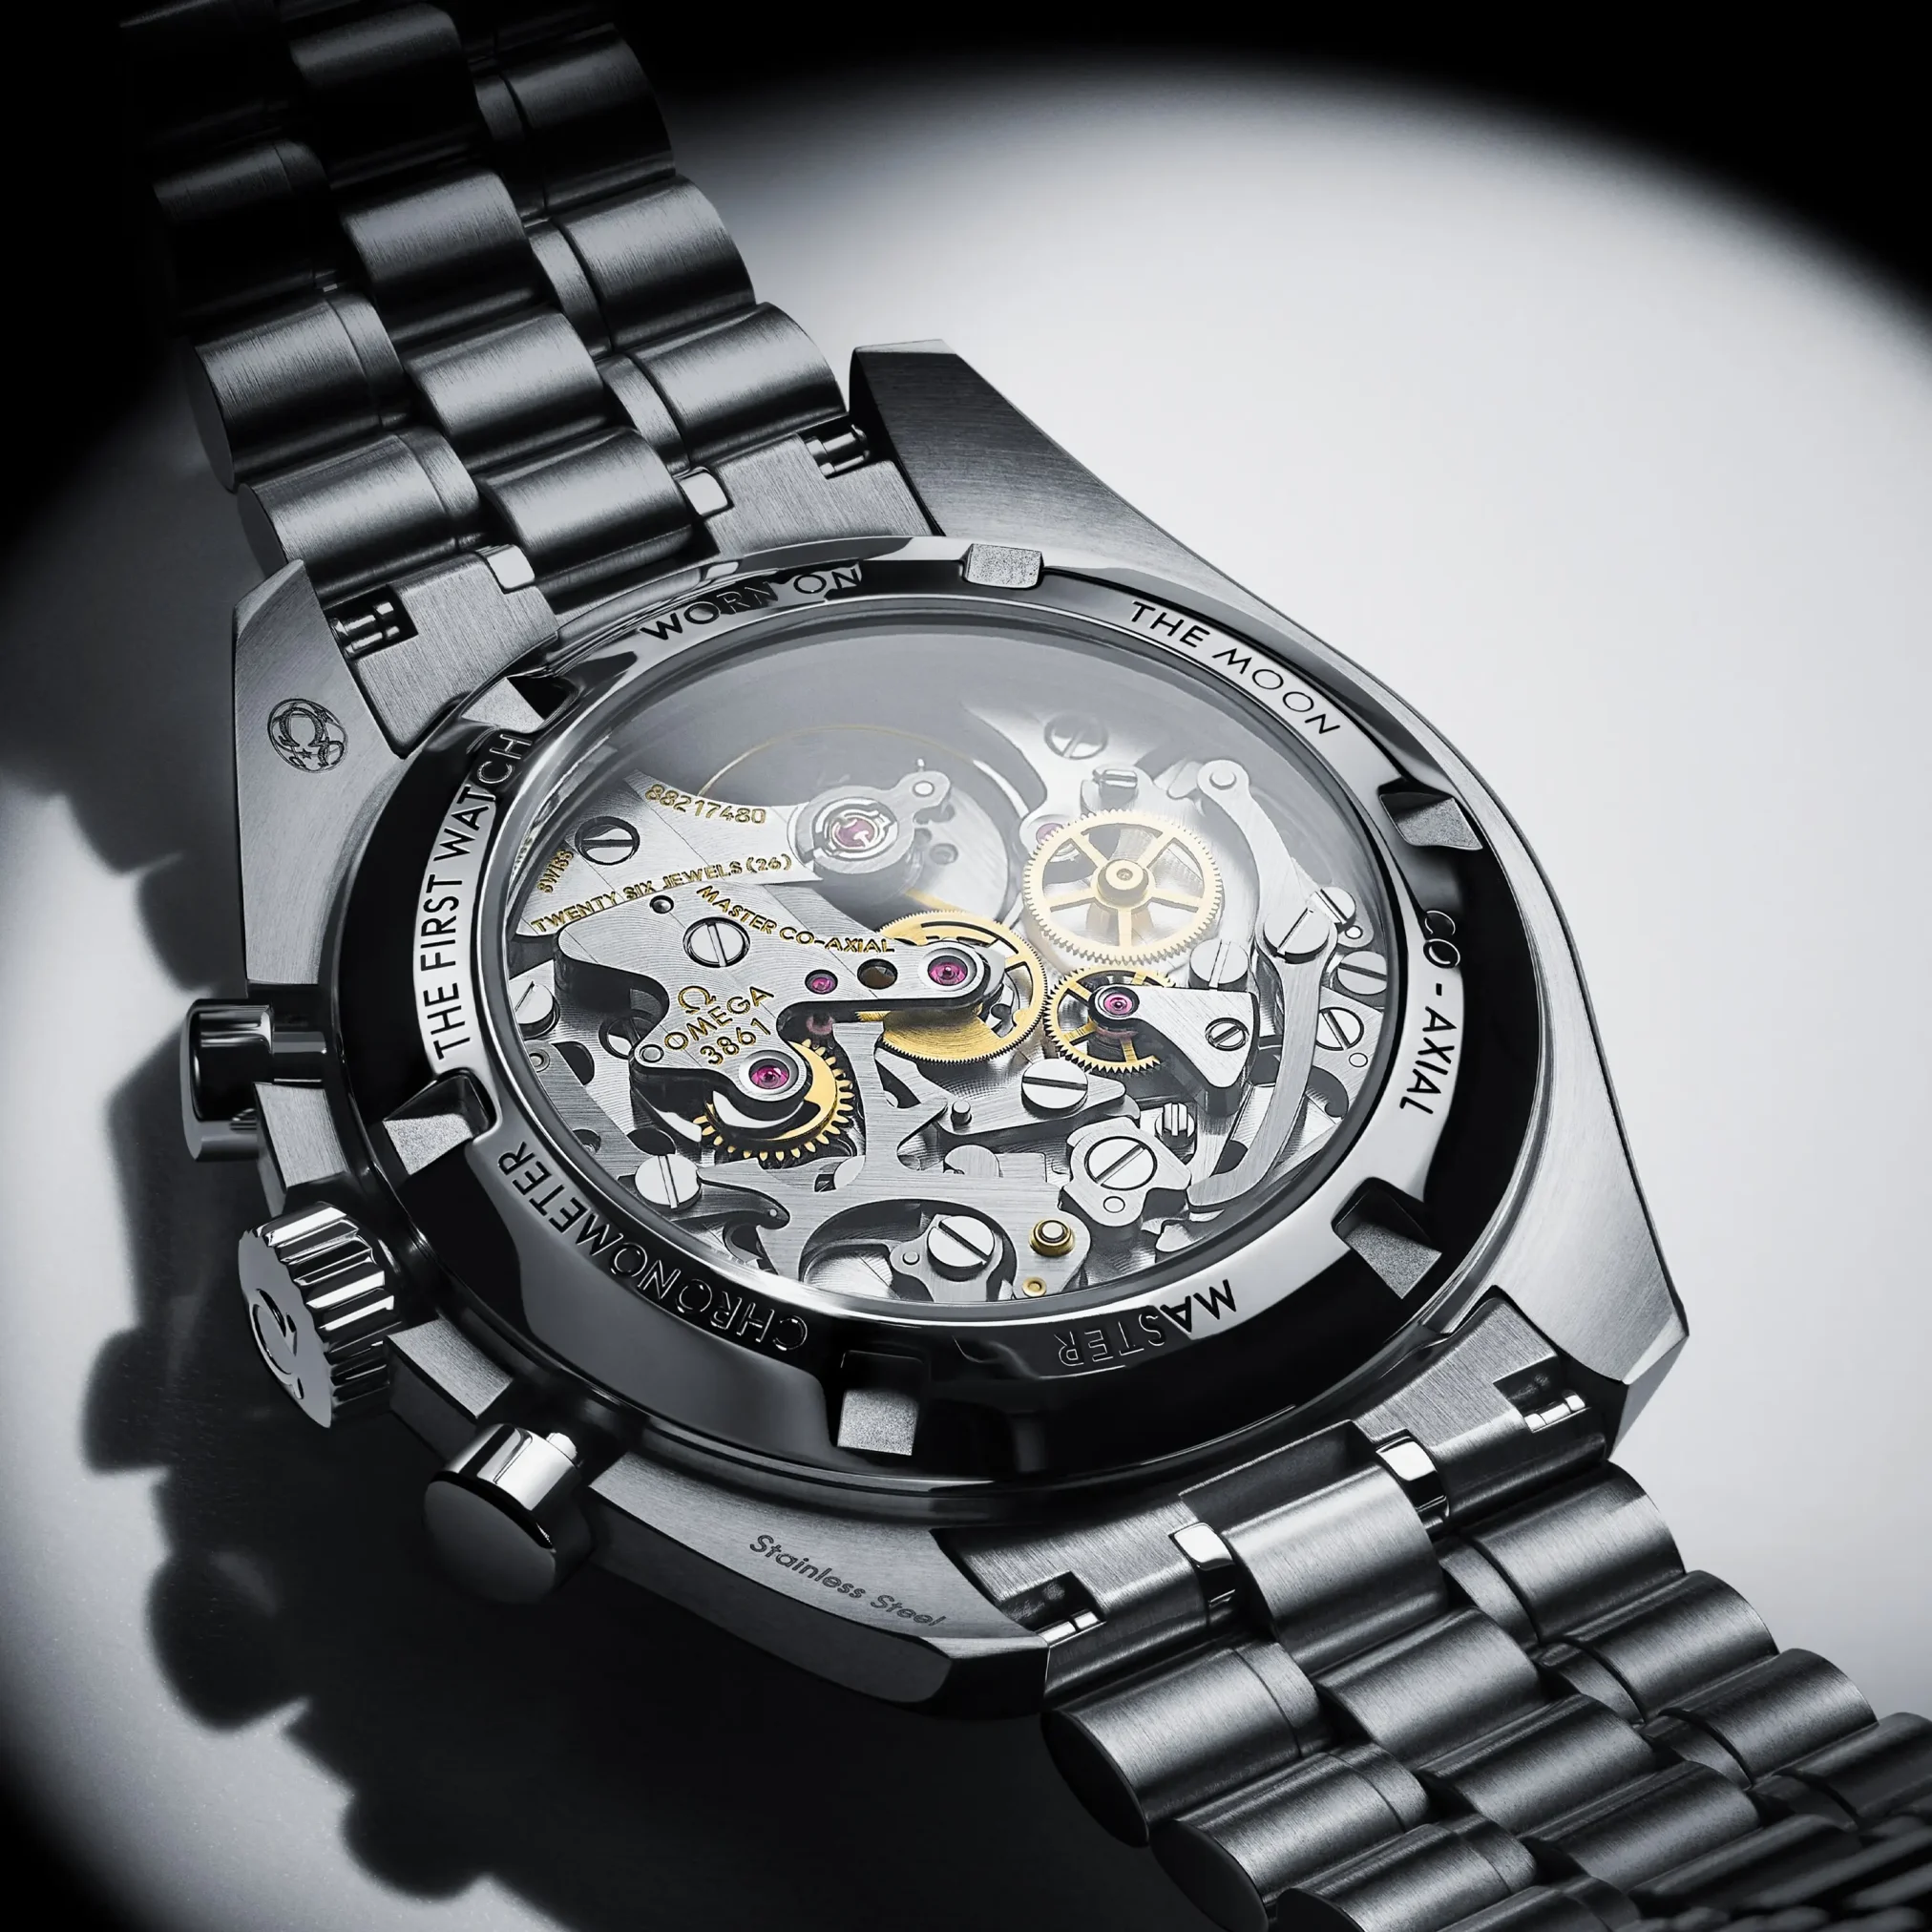 Đồng hồ Omega Speedmaster Moonwatch Professional 310.30.42.50.04.001 mặt số màu trắng. Dây đeo bằng thép. Thân vỏ bằng thép.